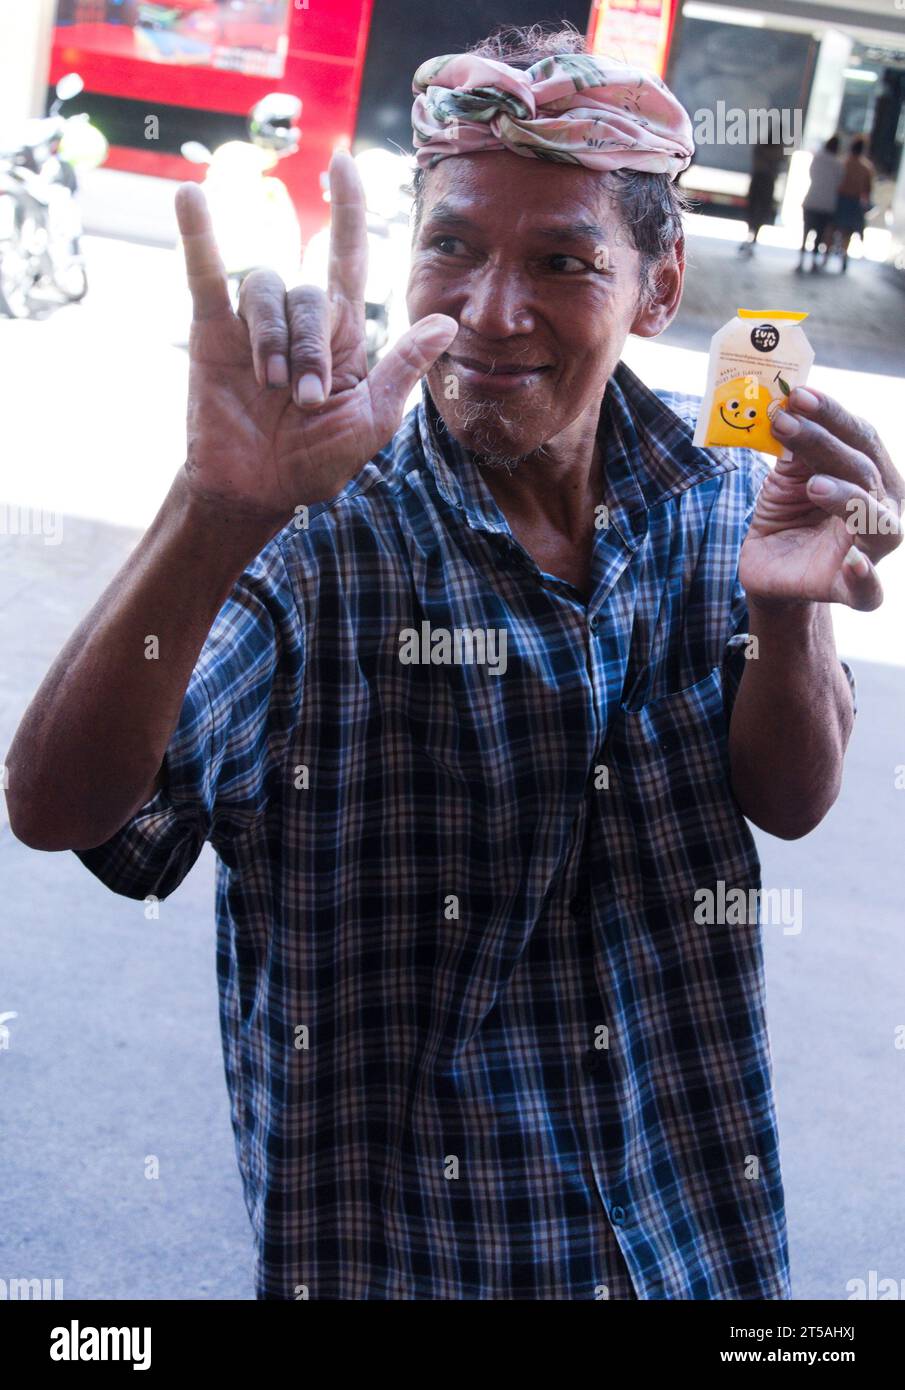 Un homme plus âgé dans la rue à Bangkok, en Thaïlande, fait un signe du geste de la main des cornes, salut rock 'n' roll standard, geste de la main des fans de rock, cornes du diable ou cornes en métal, signe de la main «rock sur». Dans son autre main, il tient un échantillon gratuit de gelée aromatisée au riz gluant à la mangue de marque Sunsu qu'un étal de rue voisin offre en promotion Banque D'Images